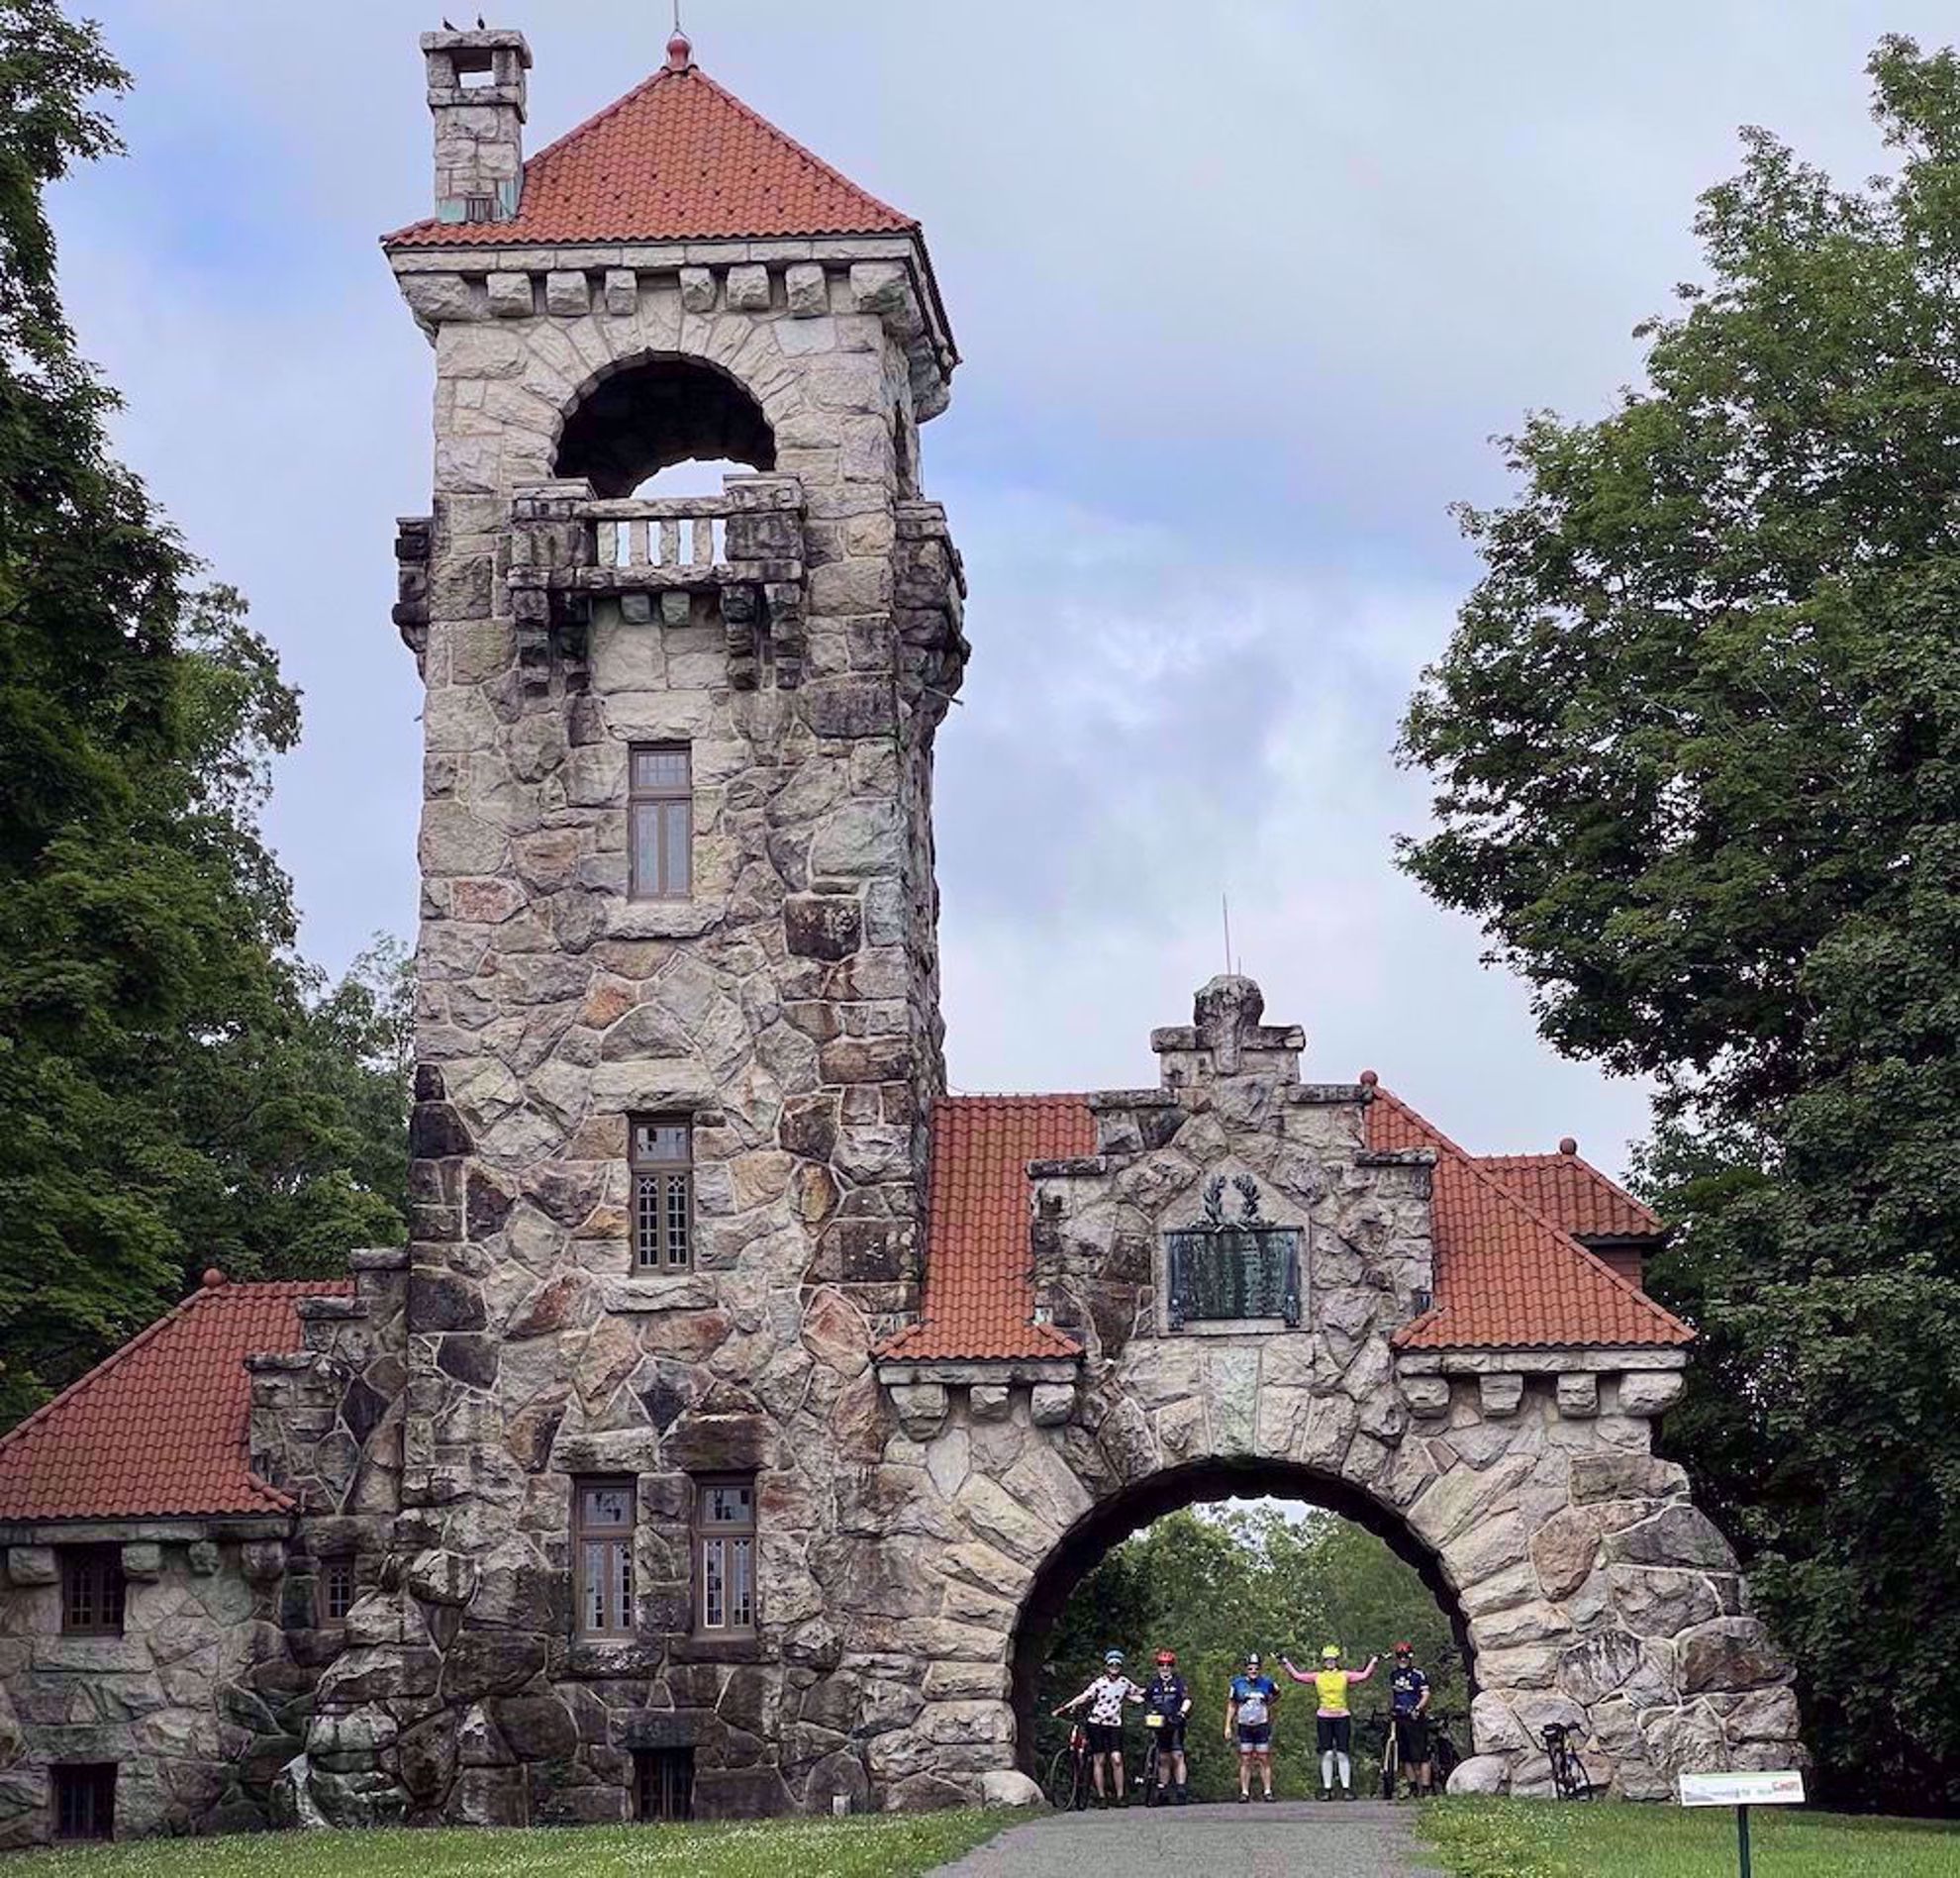 Biking through a castle